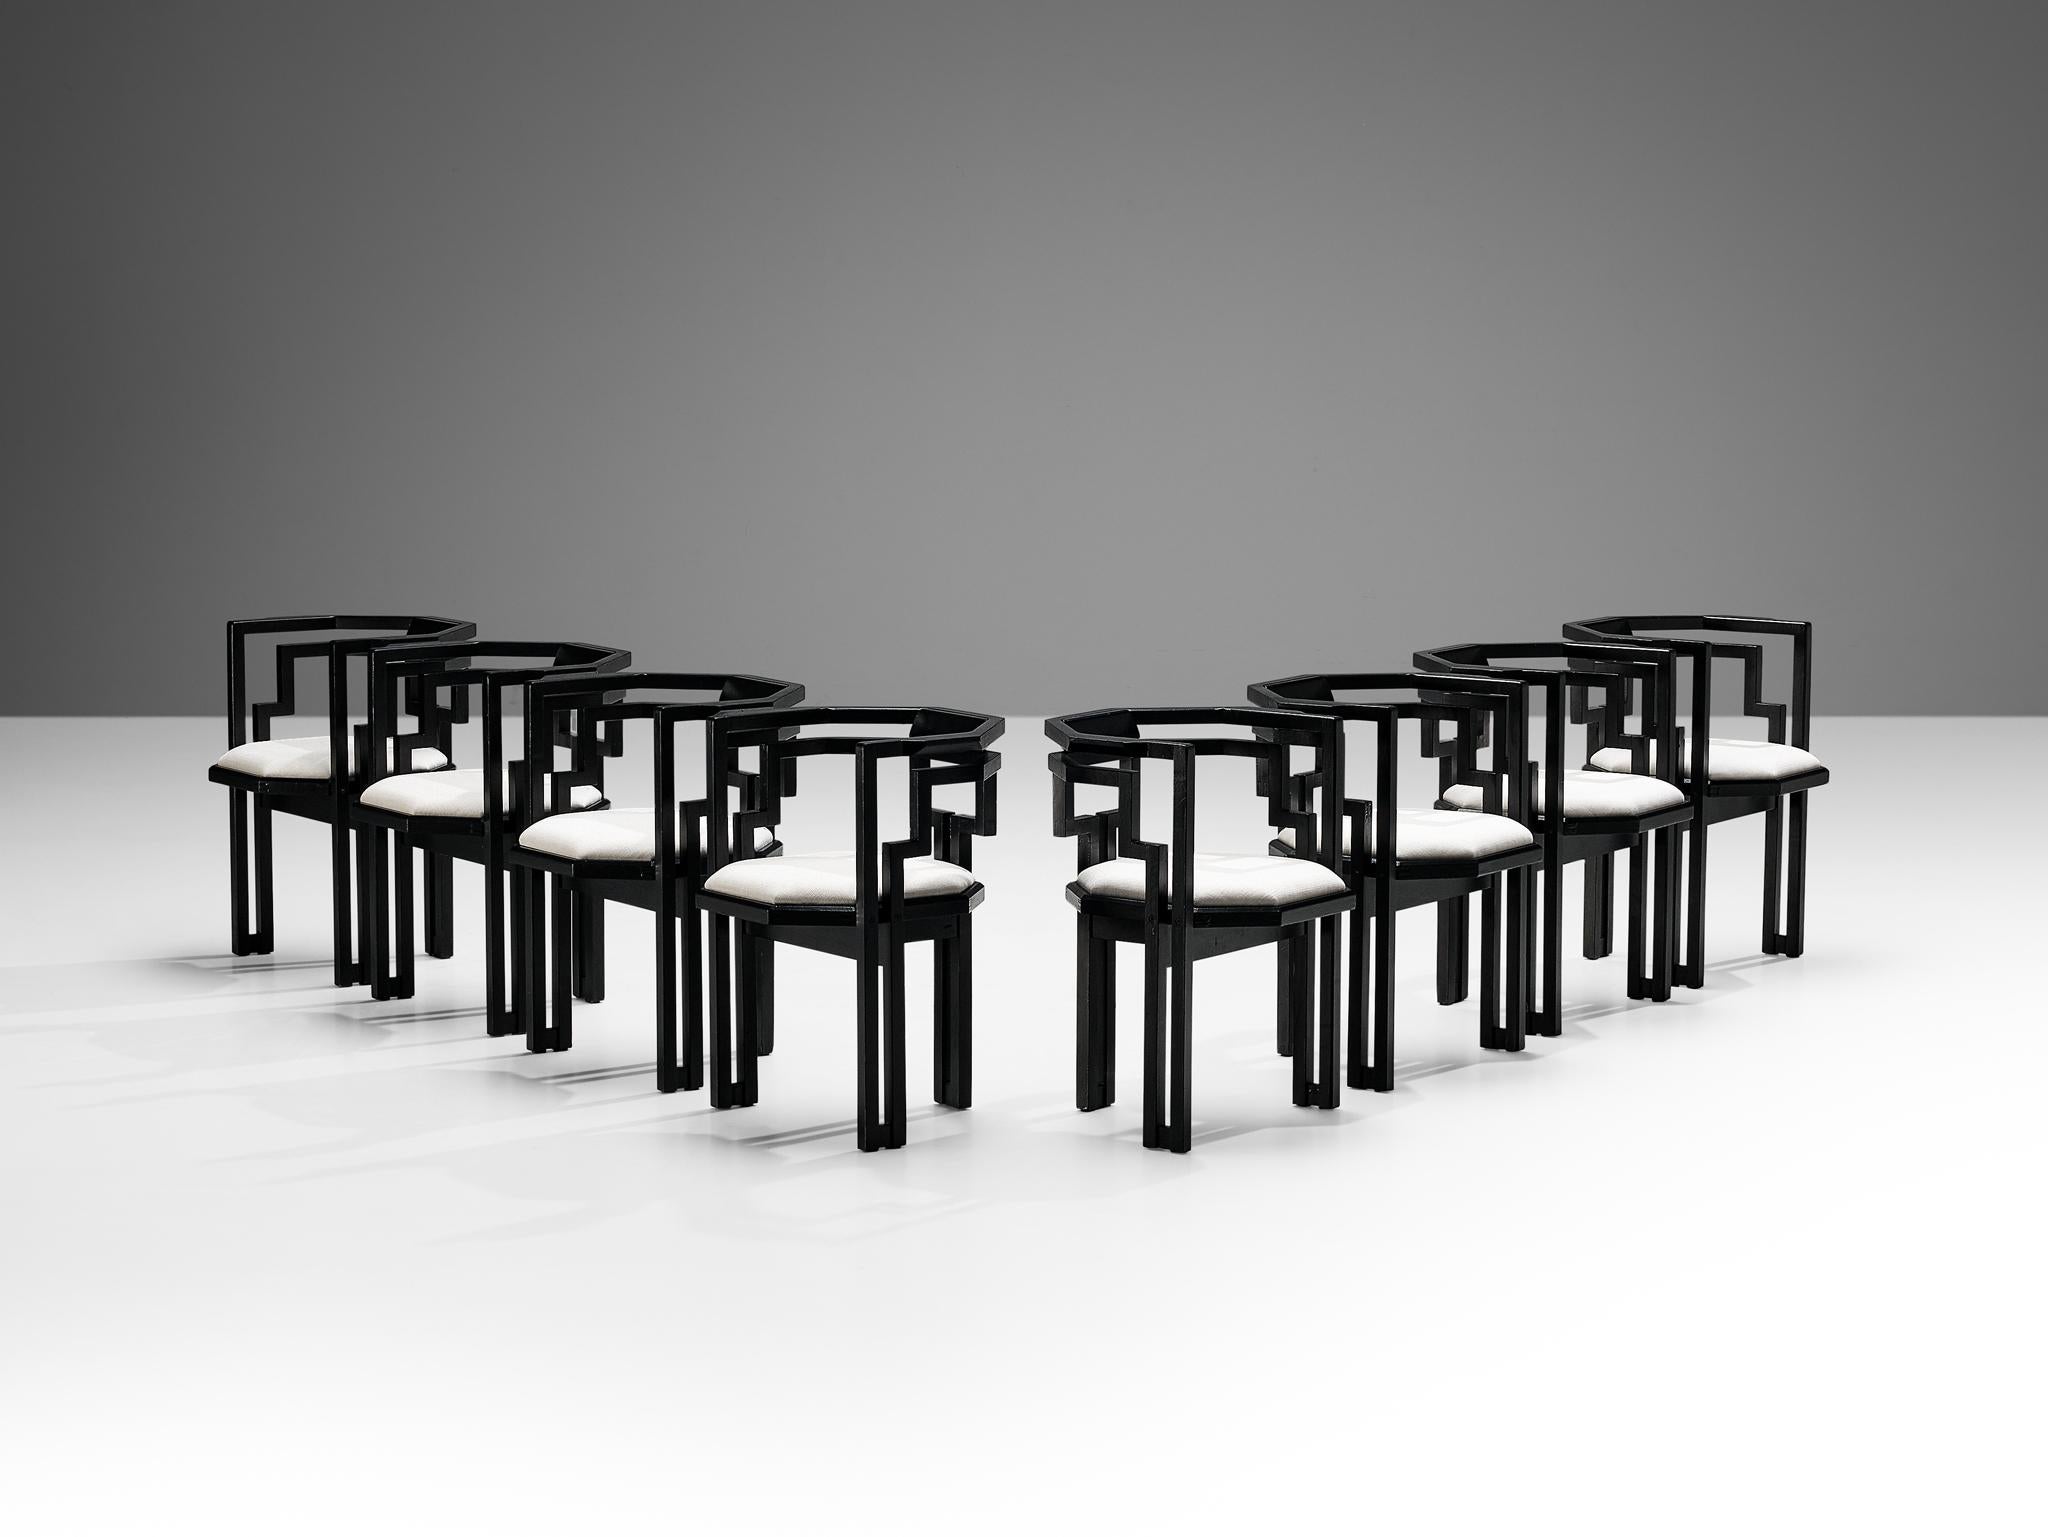 Ensemble de huit chaises de salle à manger, chêne laqué noir, tissu blanc, Italie, années 1970.

Ensemble exceptionnel de huit chaises de salle à manger italiennes géométriques. Ces chaises combinent un design sculptural simple, mais très fort dans